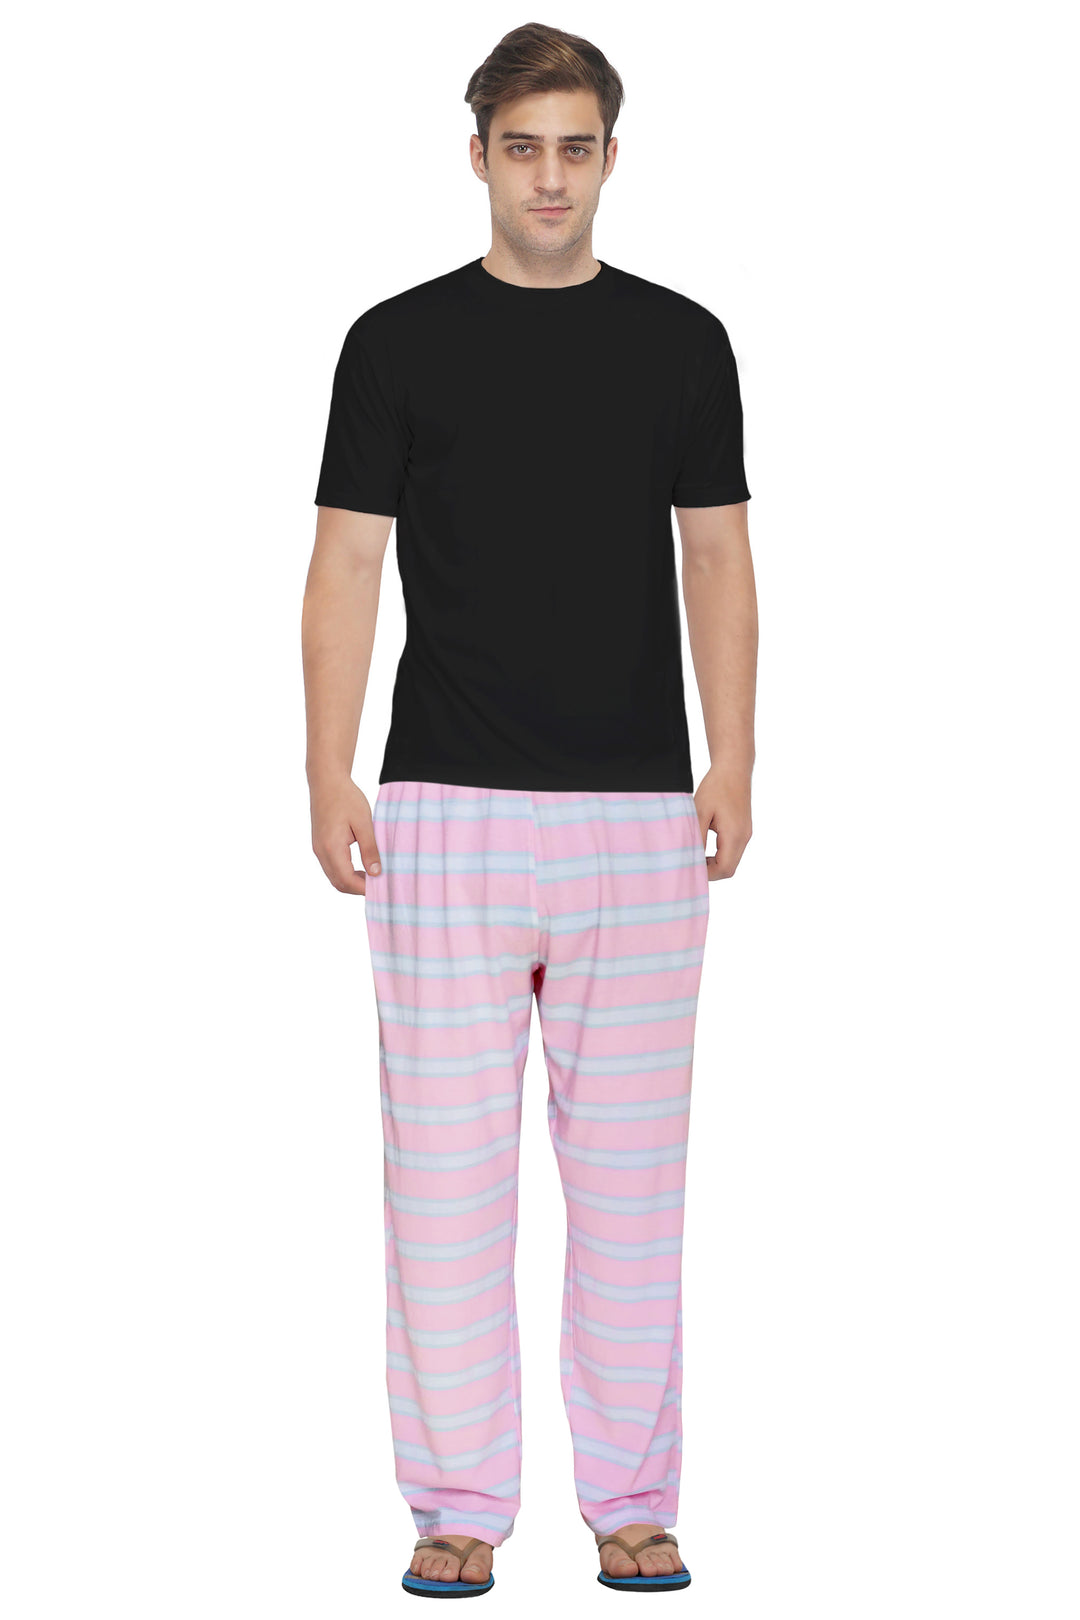 Men's Pyjama – FflirtyGo